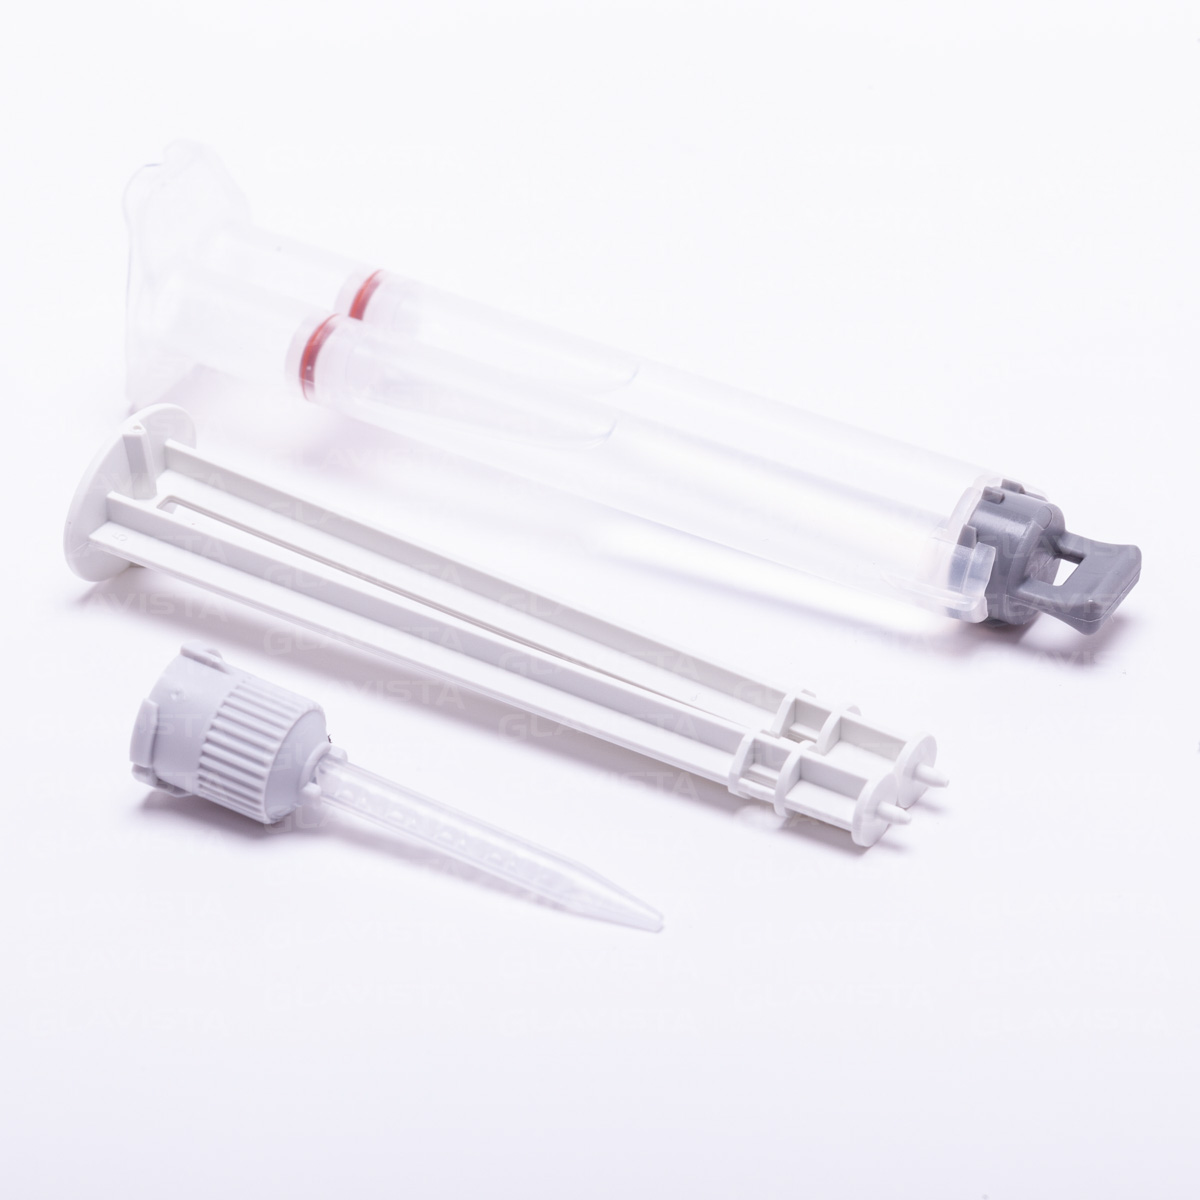  Silicone gel syringe